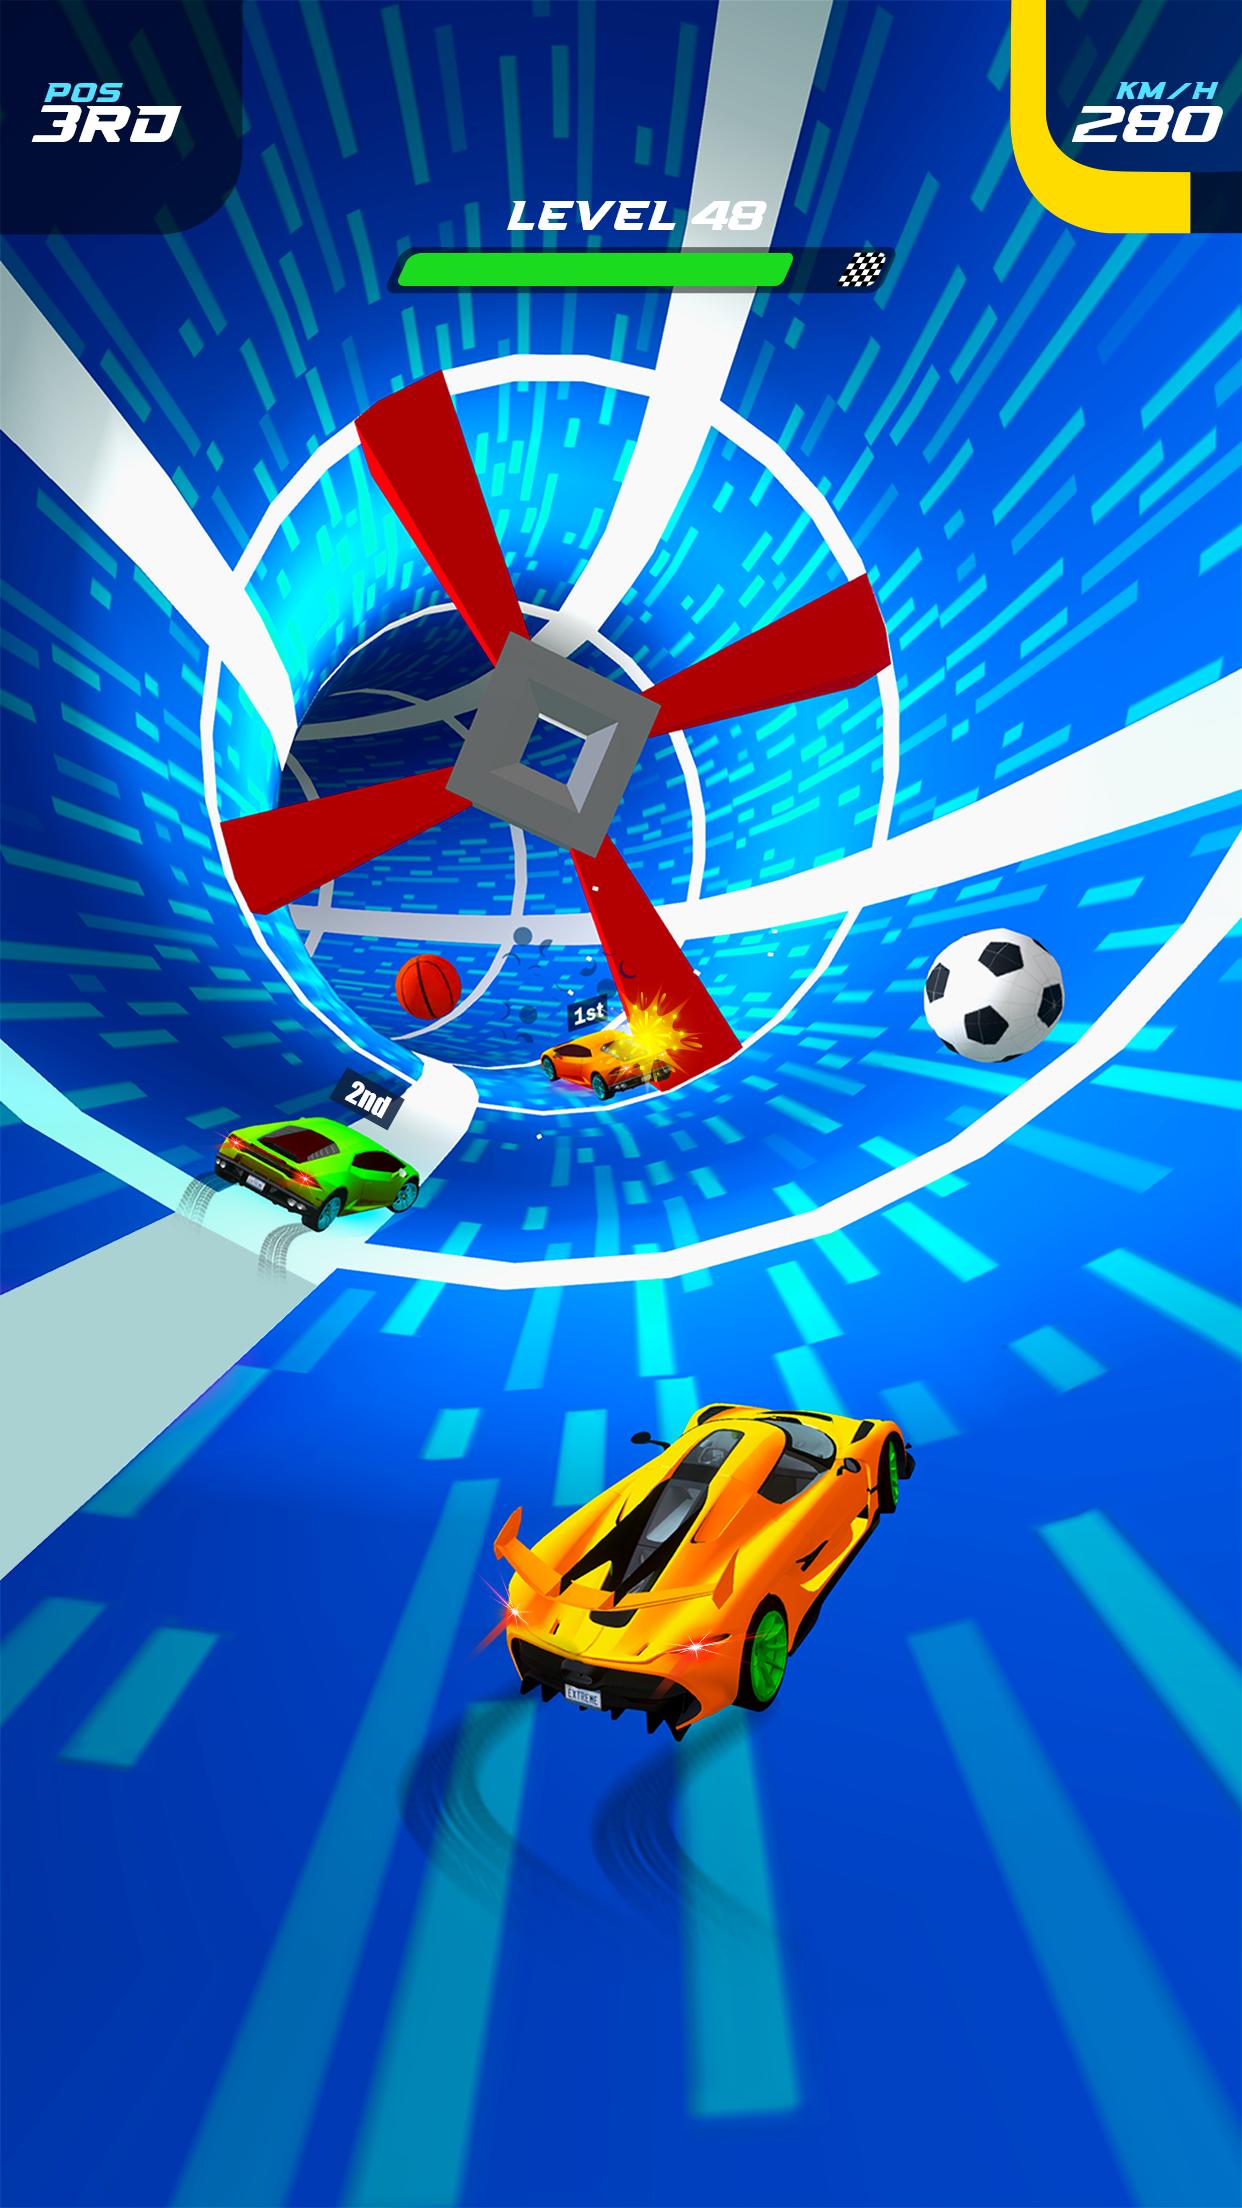 Car Racing Master: Car Game 3D